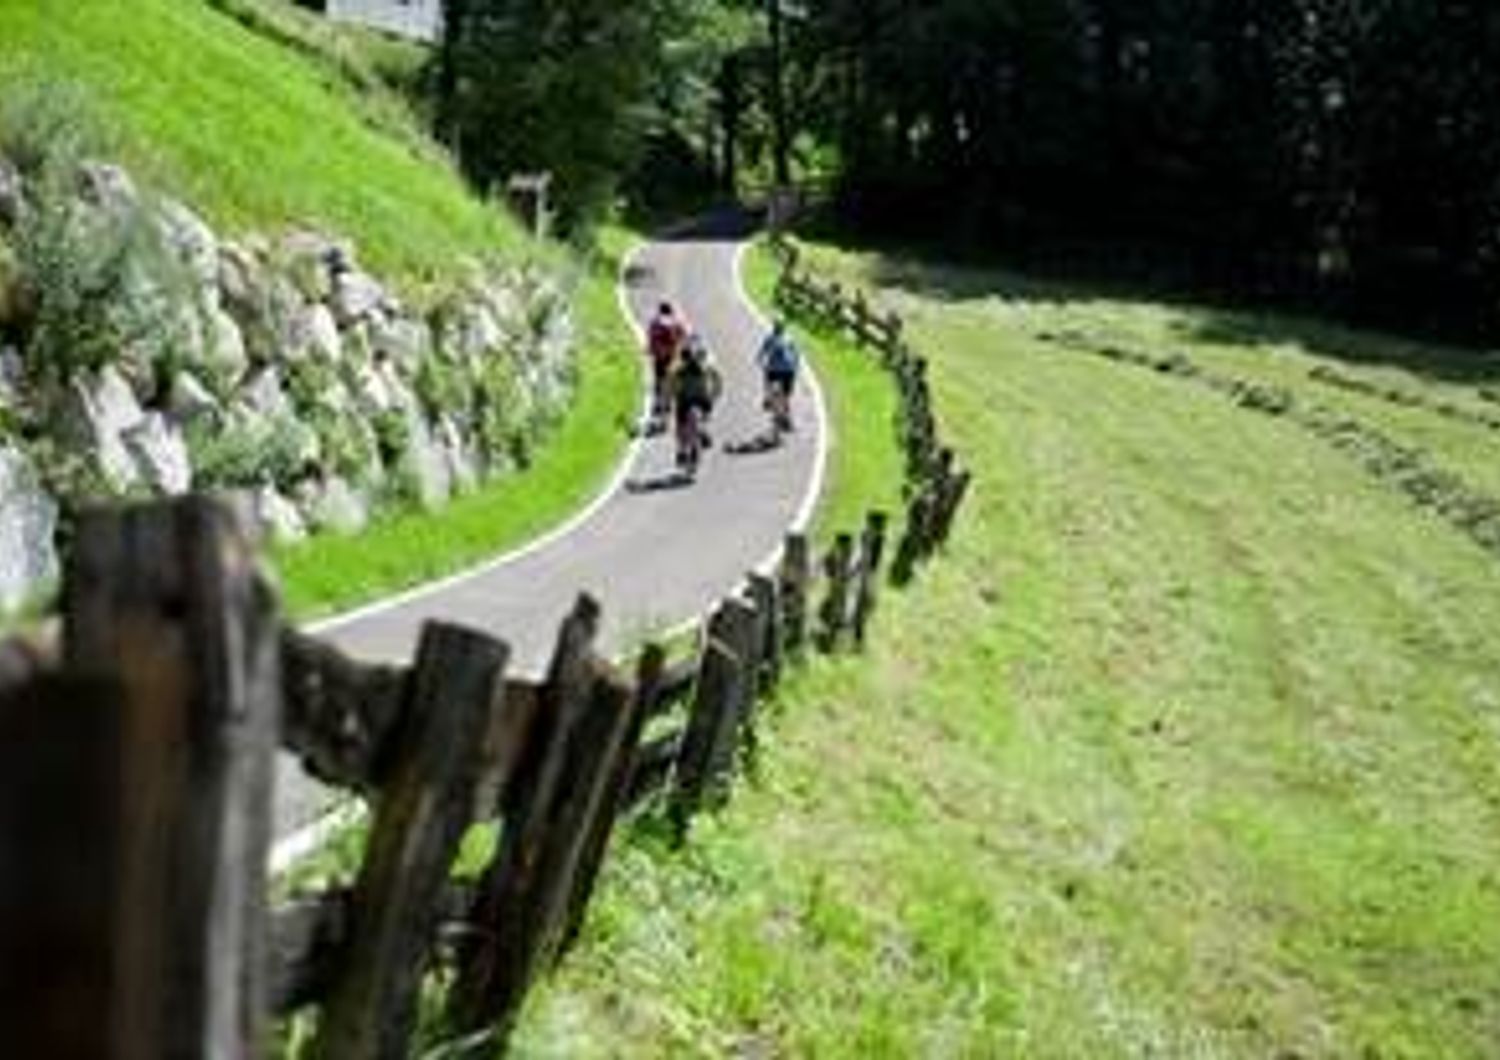 TRENTINO ALTO ADIGE (Brennero &ndash; Bolzano)  Premio - Territorio Bike Friendly  &nbsp;  &lsquo;La ciclovia perfetta&rsquo;. &Egrave; l&rsquo;estrema sintesi della motivazione della giuria per il Premio Territorio Bike Friendly assegnato a questo percorso di 100km che percorre la Valle Isarco, da Vipiteno a Bressanone, da Chiusa fino a Bolzano, tra citt&agrave; d&rsquo;arte e verdi boschi.  Photocredit: Alex Filz